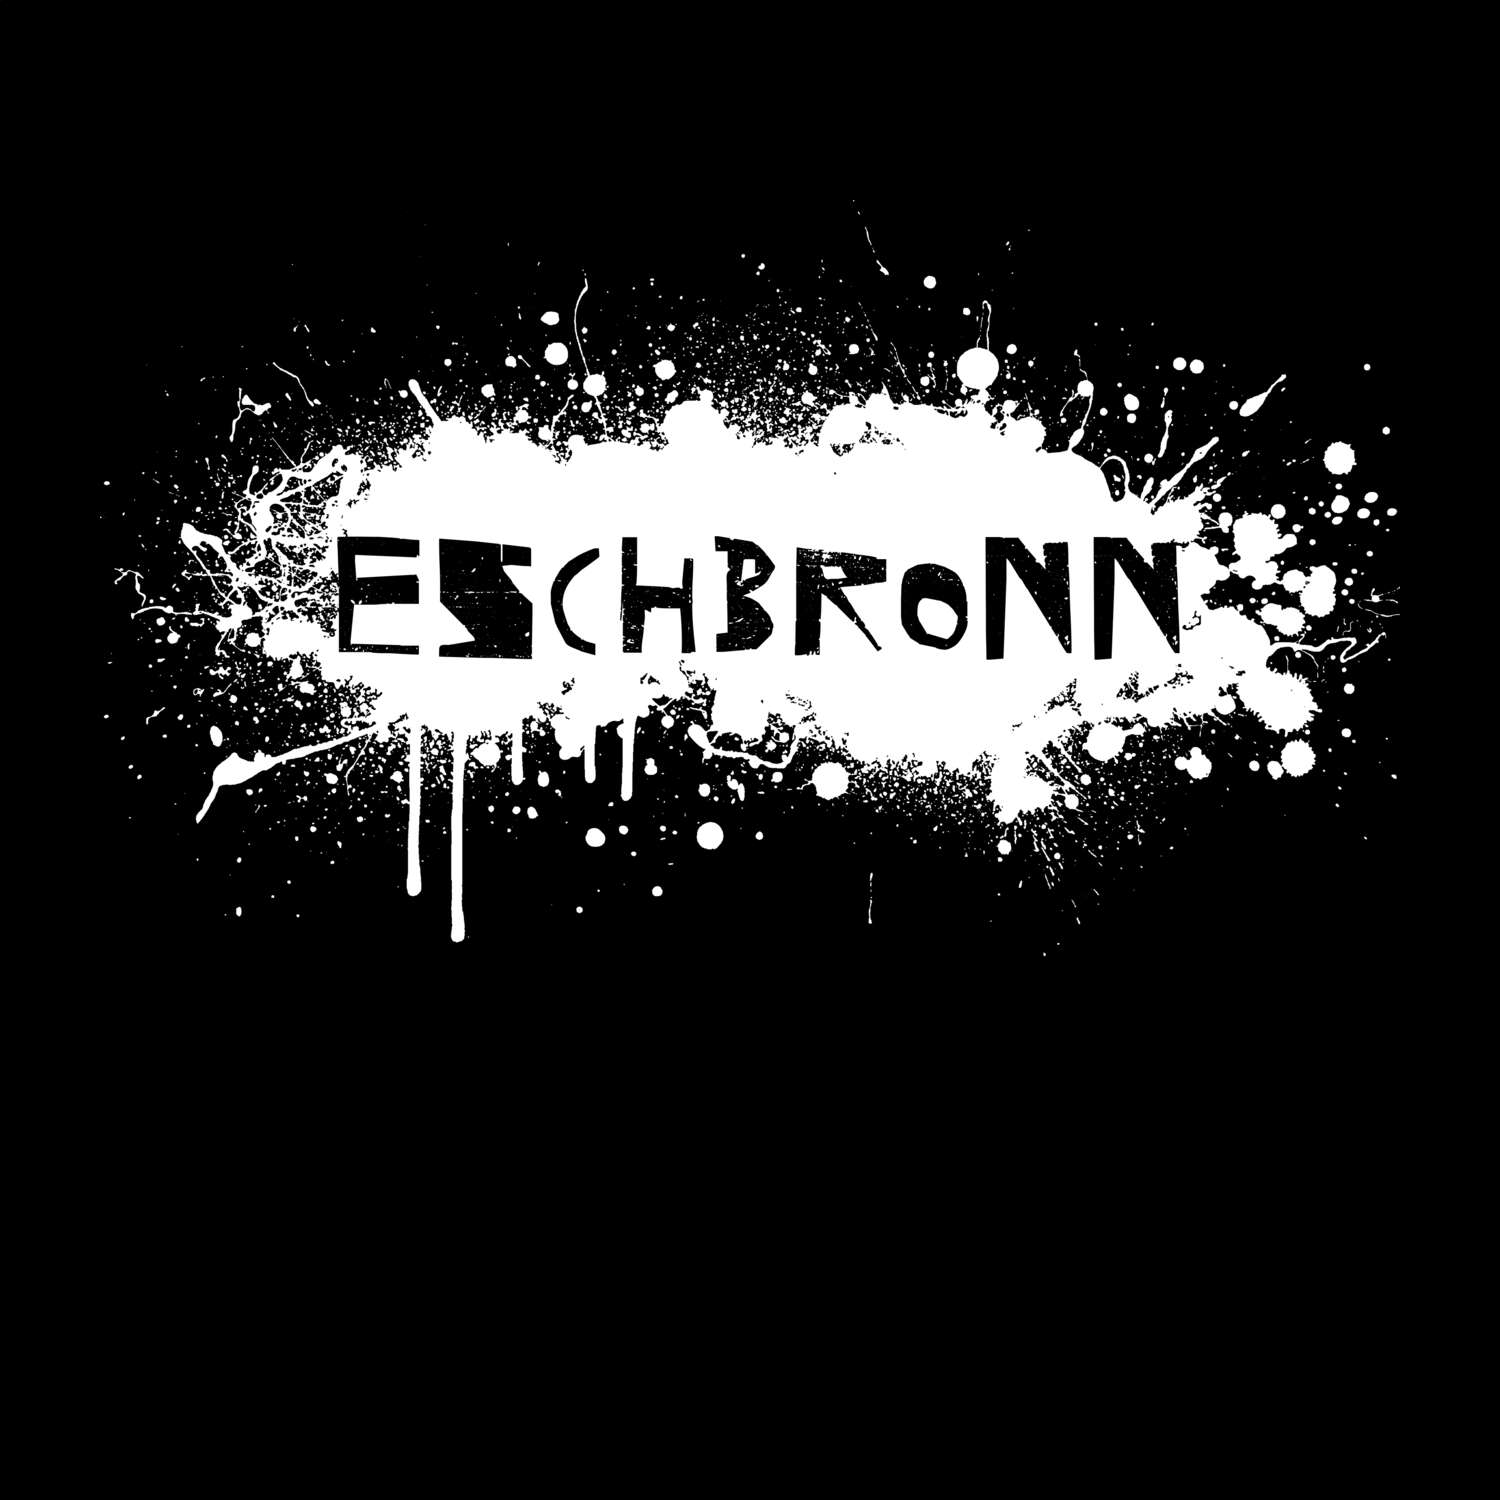 Eschbronn T-Shirt »Paint Splash Punk«